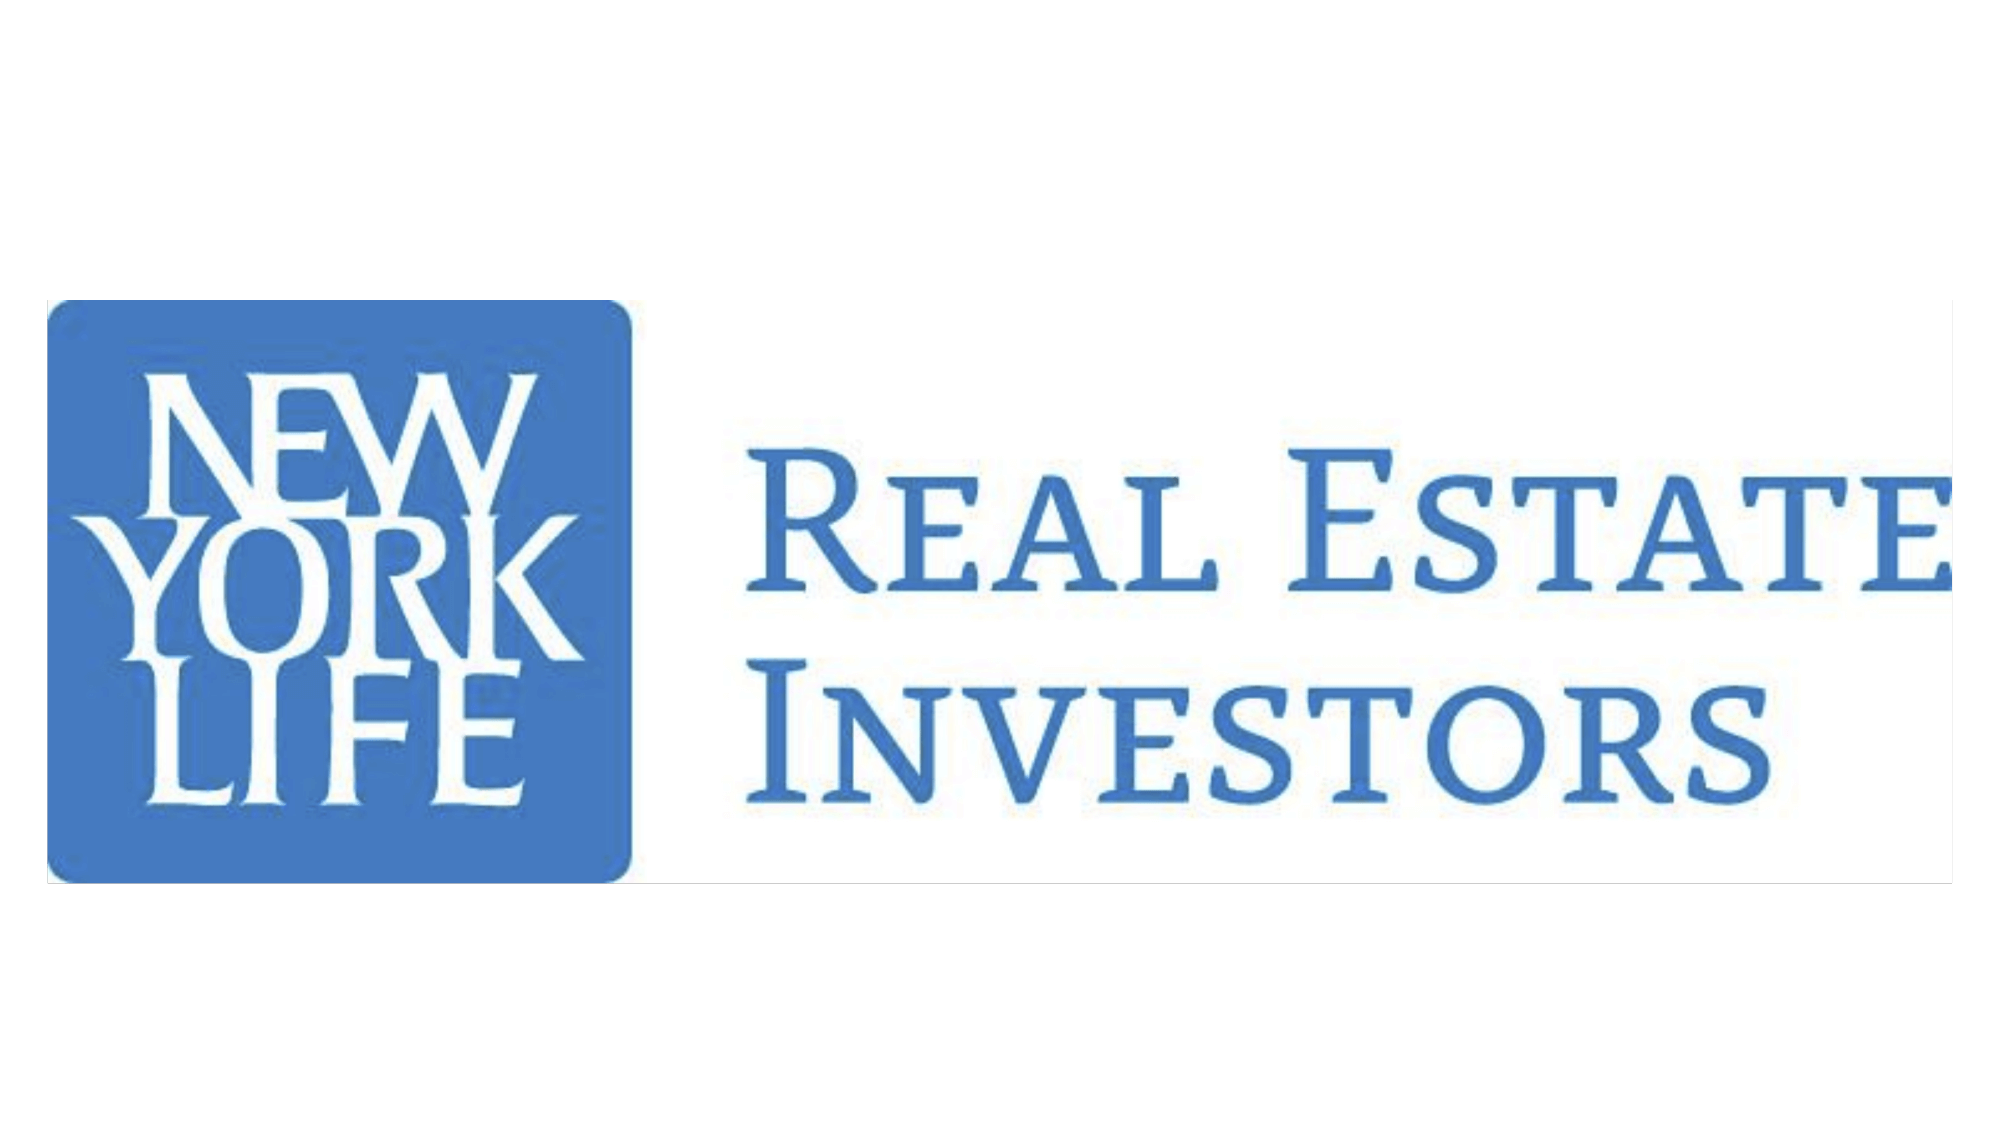 New York Life: Real Estate Investors